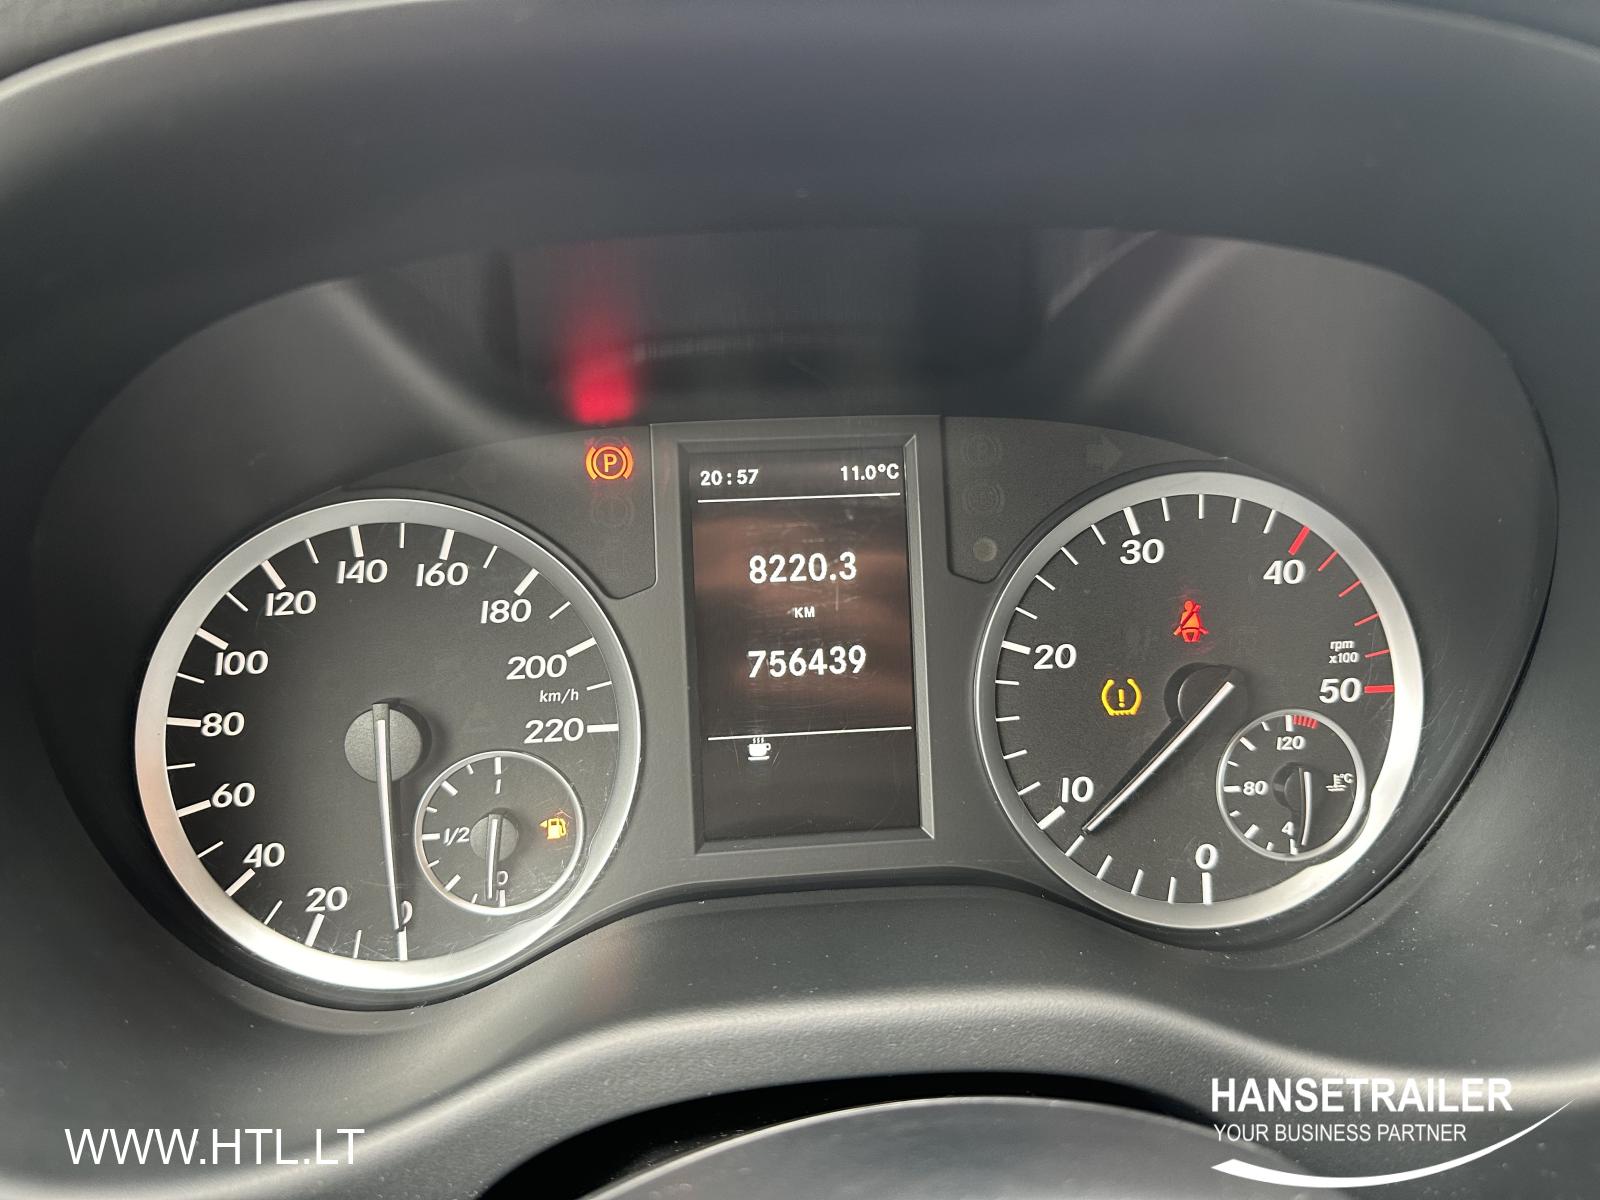 2019 фургон Пассажирский до 3,5 т Mercedes-Benz Vito Tourer + PVM